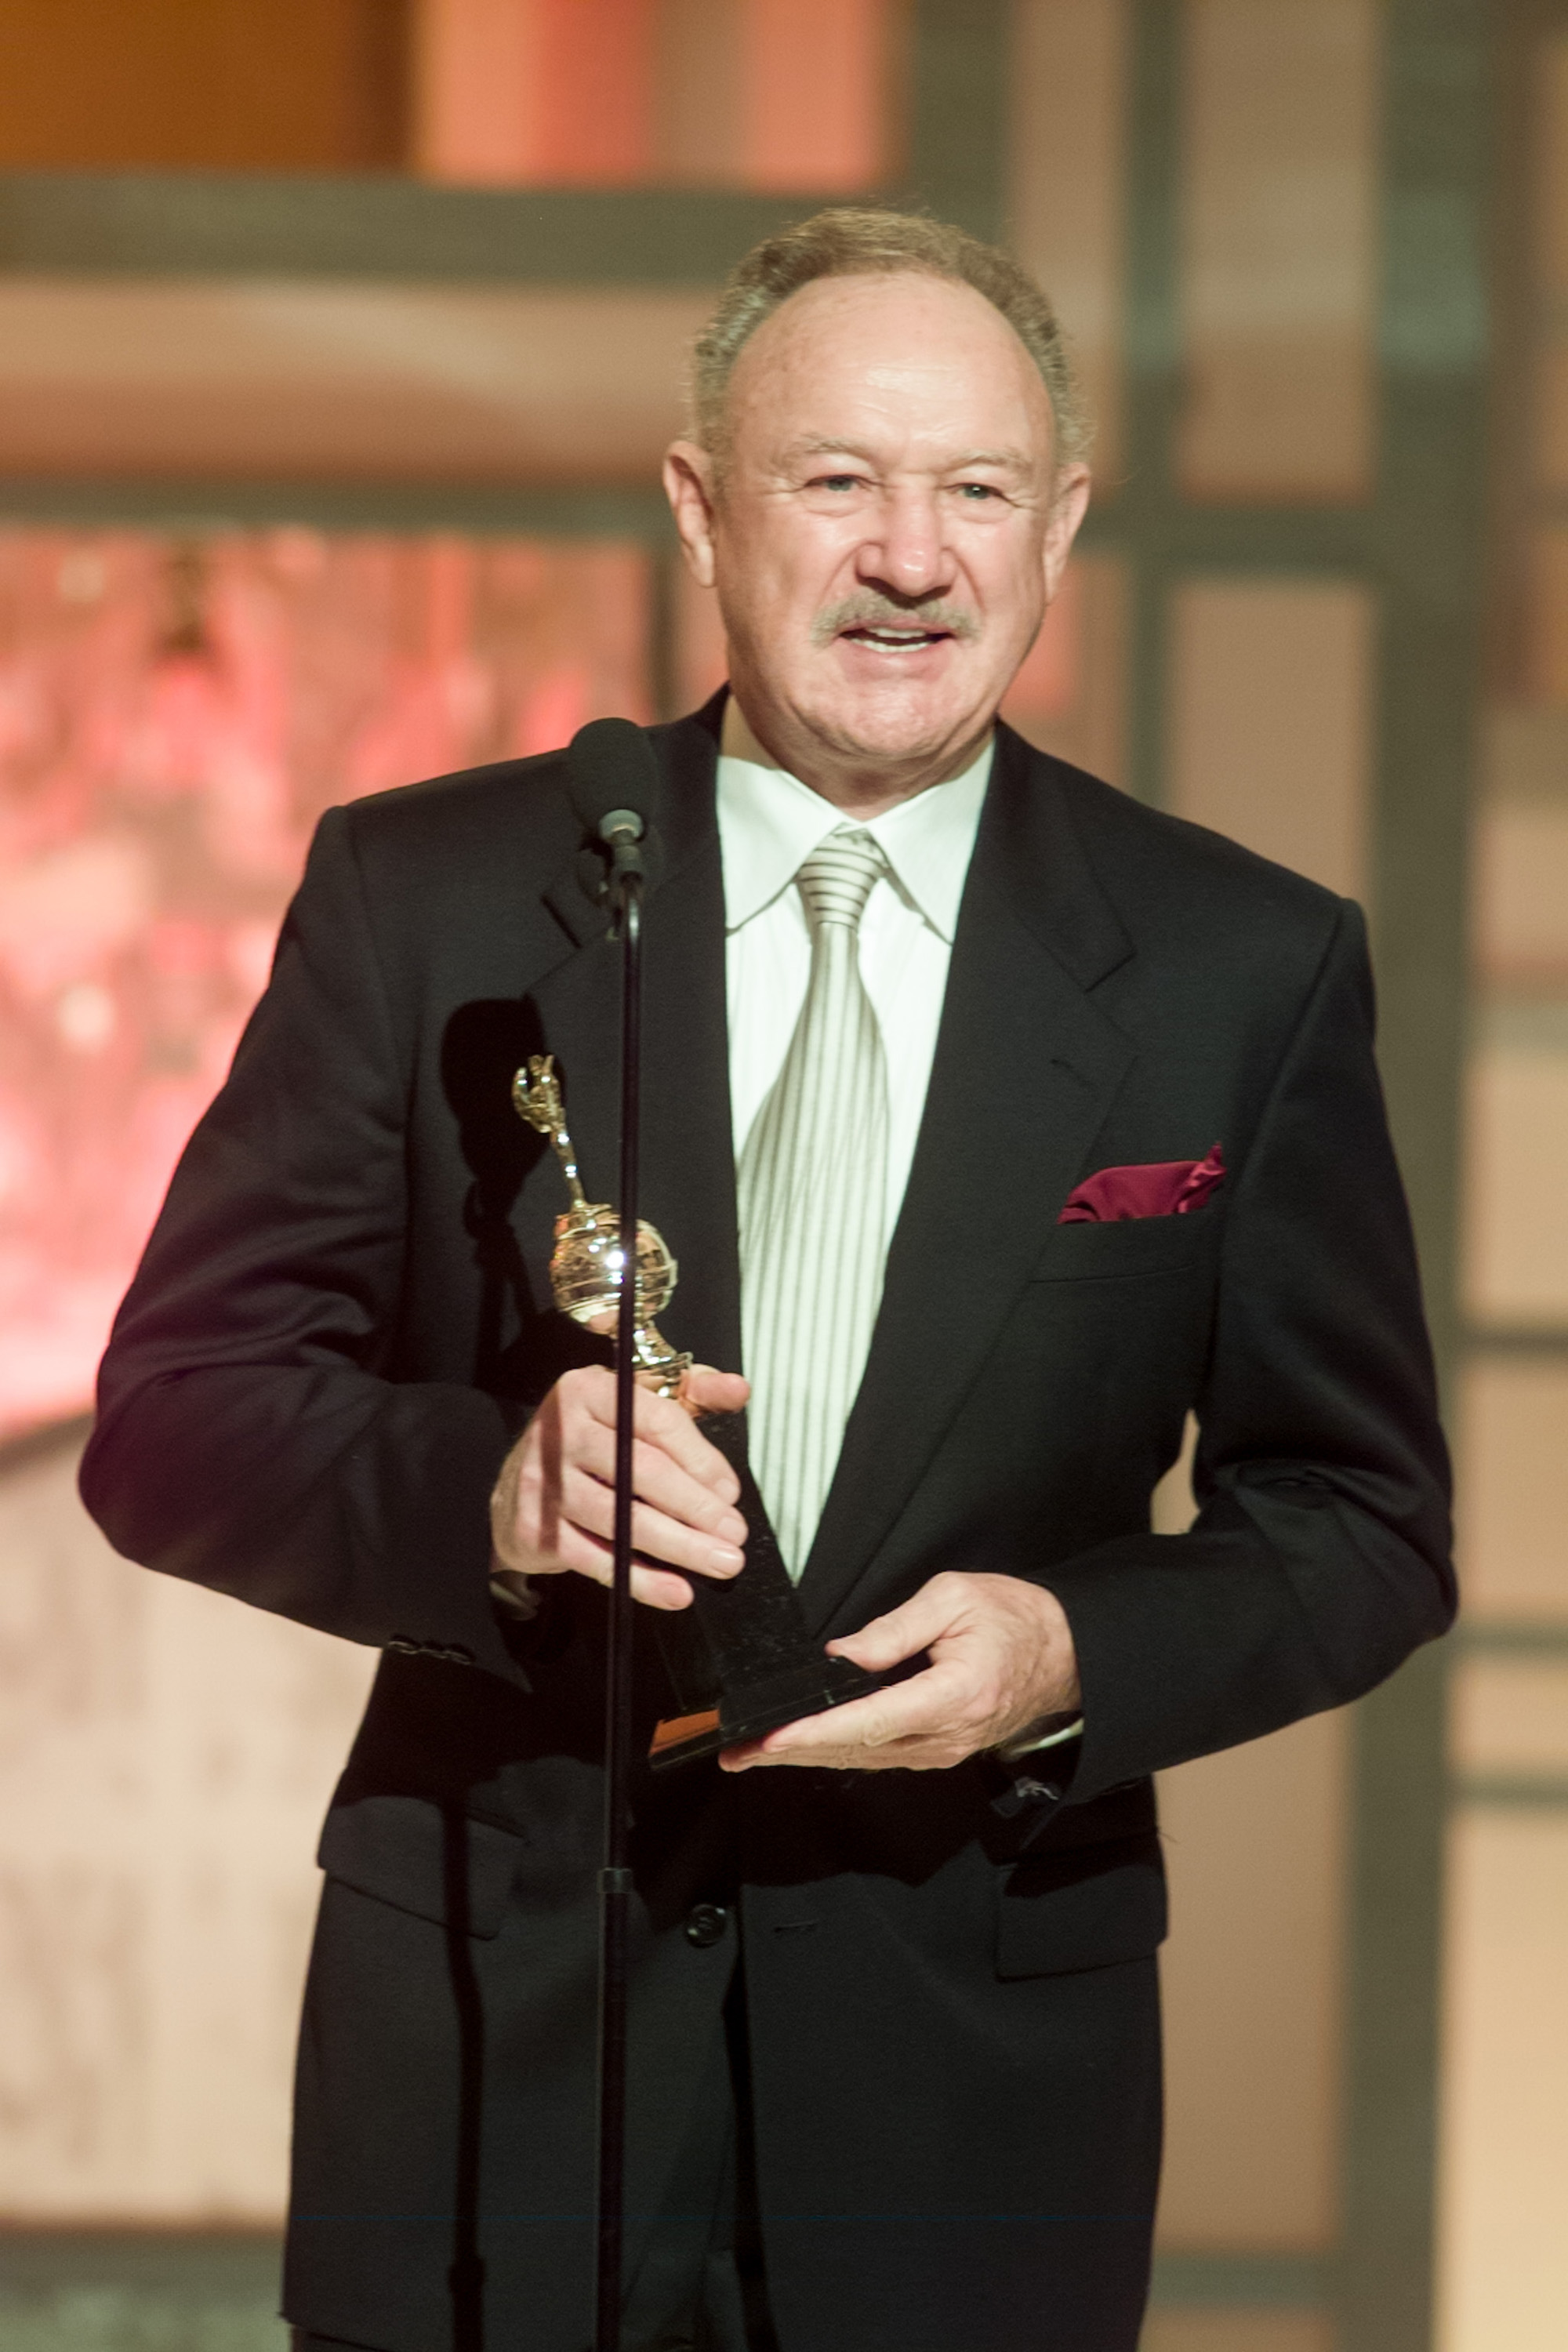 L'acteur Gene Hackman accepte le prix Cecil B. DeMille sur scène lors de la 60e cérémonie annuelle des Golden Globe Awards qui s'est tenue à l'hôtel Beverly Hilton le 19 janvier 2003. | Source : Getty Images